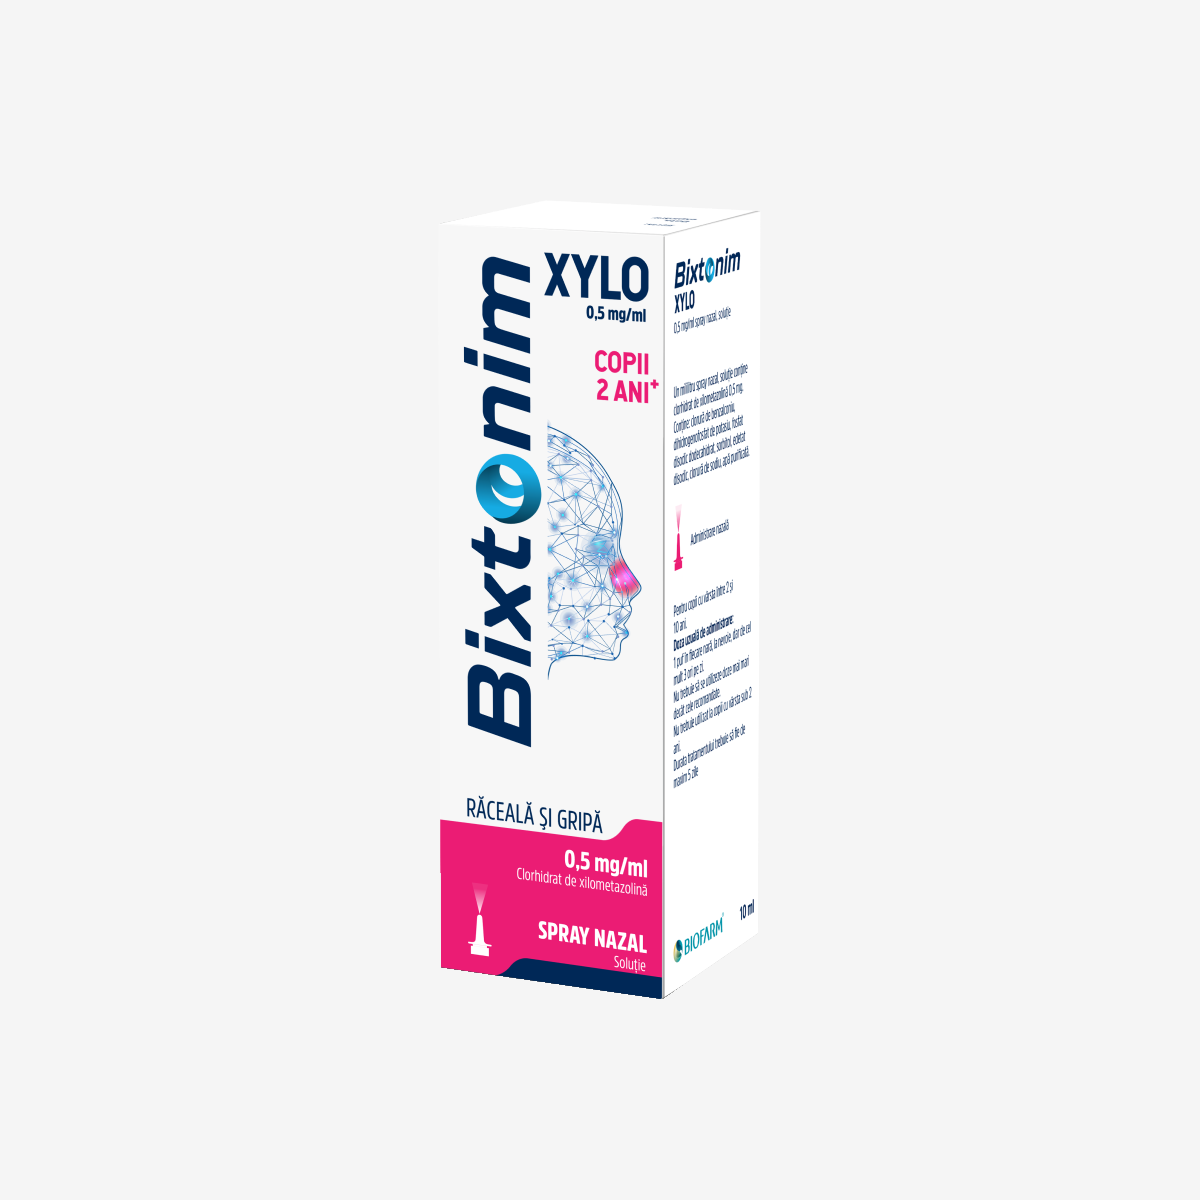 Bixtonim Xylo spray nazal adulti, 1 mg/ml, 10 ml, Biofarm